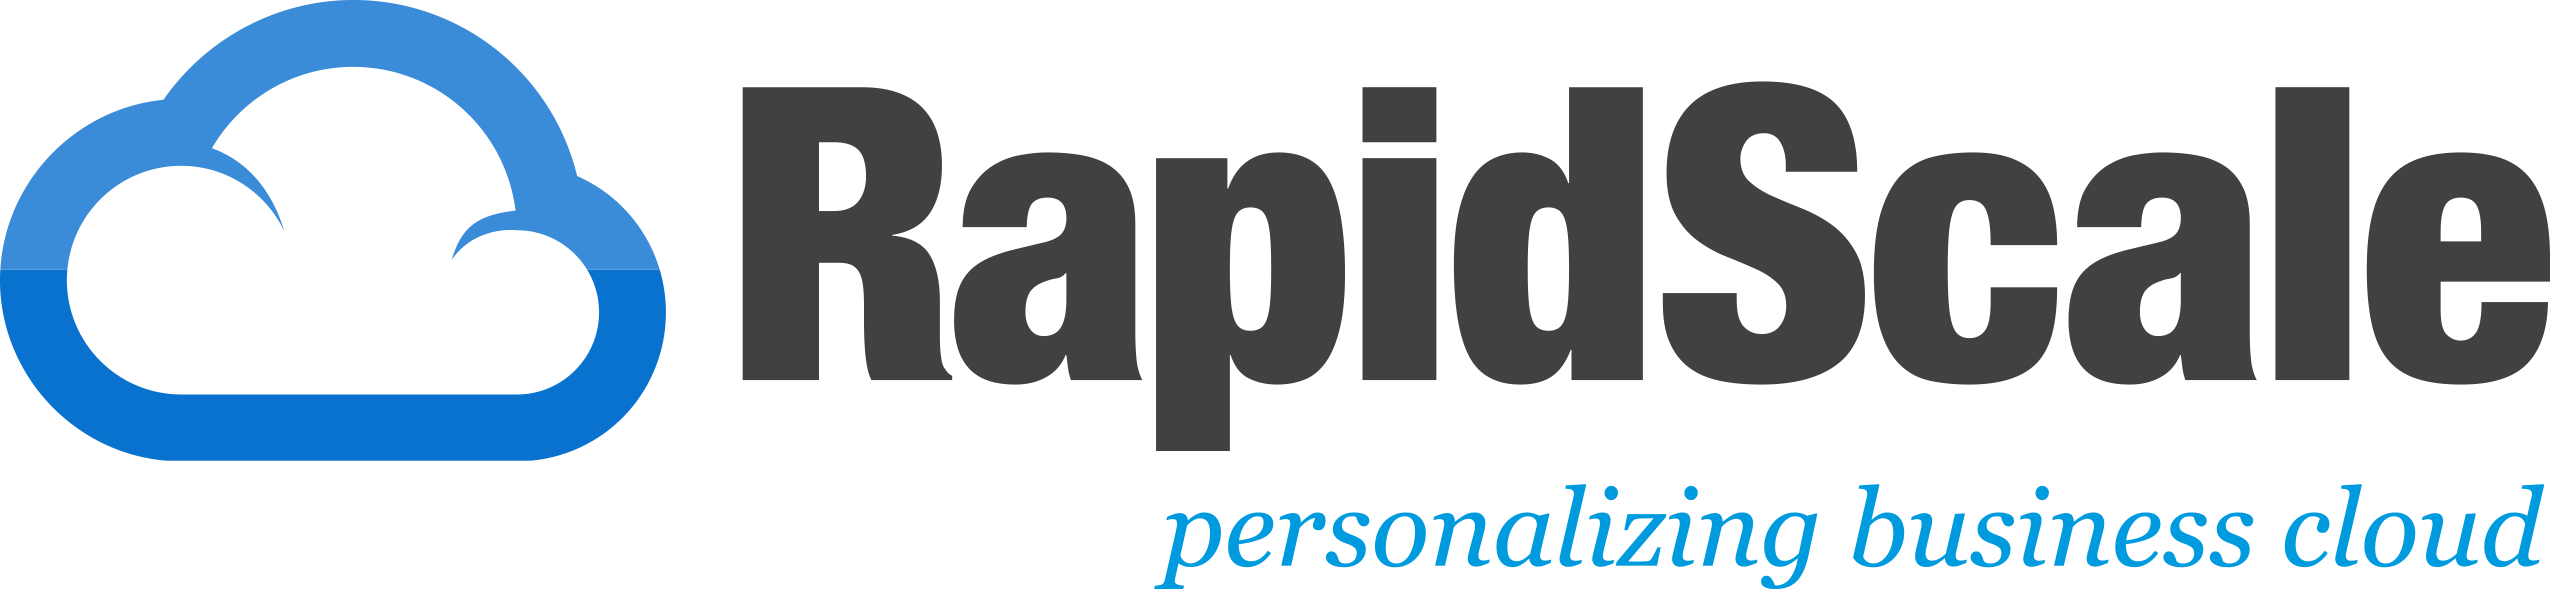 Cloud Services Logo - Rapidscale Logo Png (2550x589)